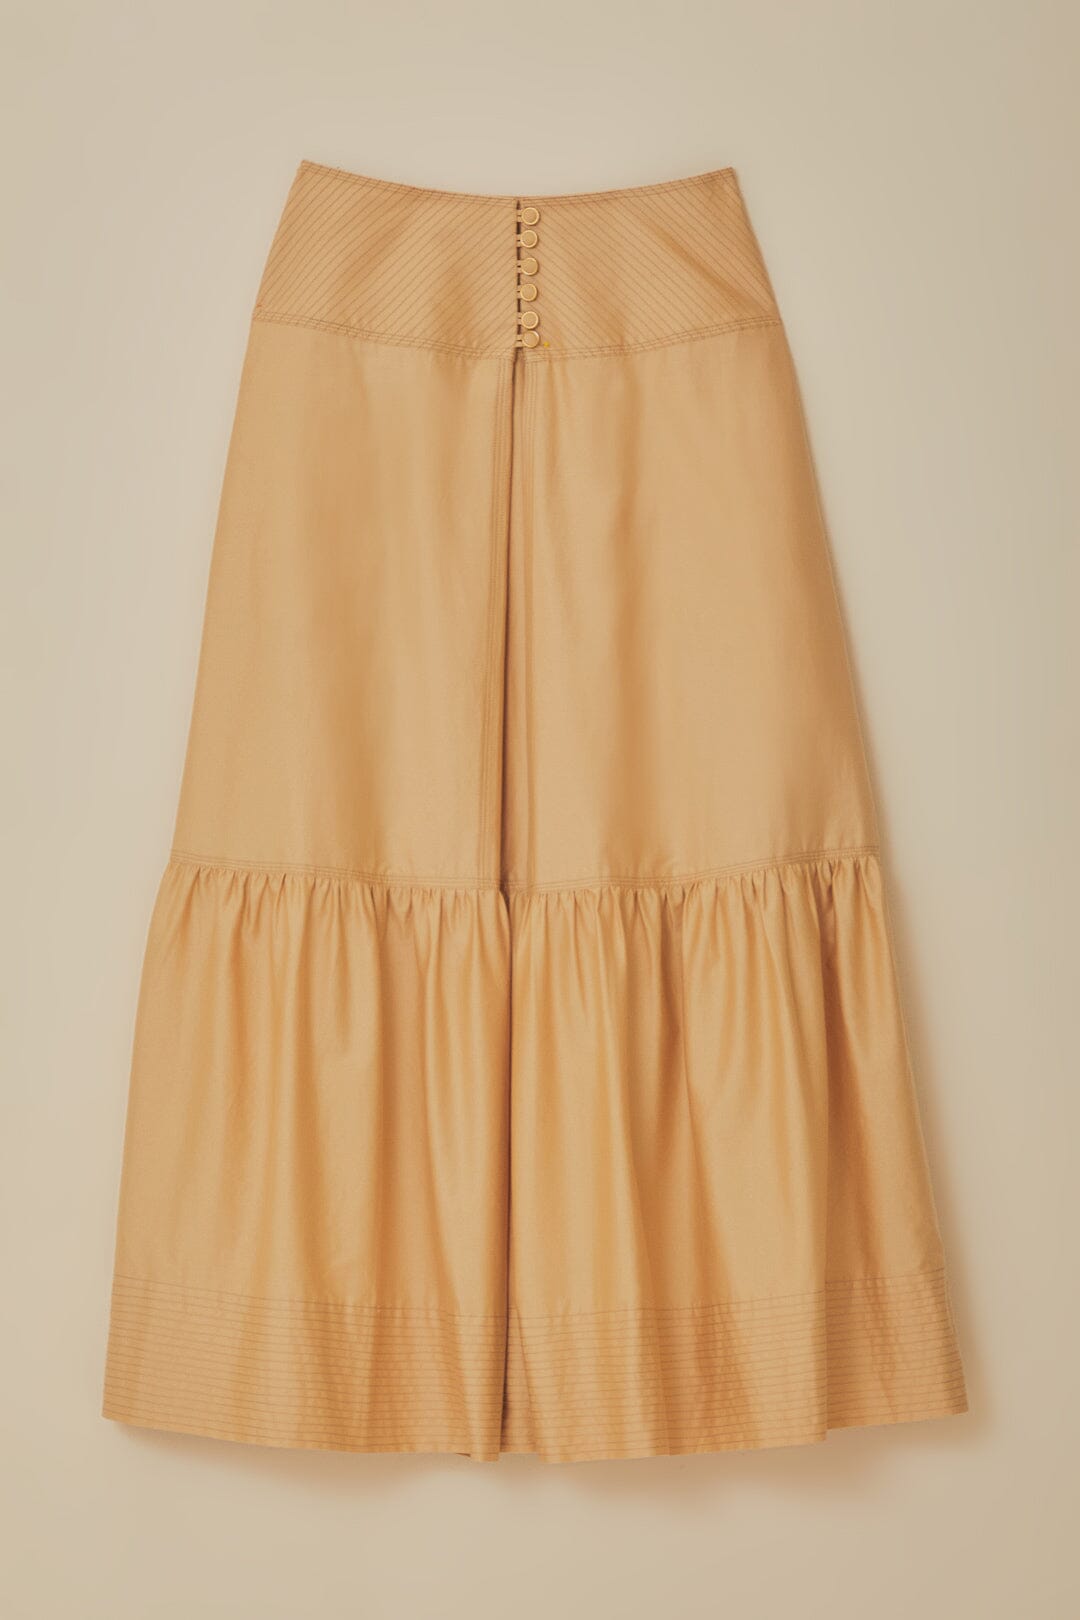 Khaki Topstitching Yoke Organic Cotton Maxi Skirt